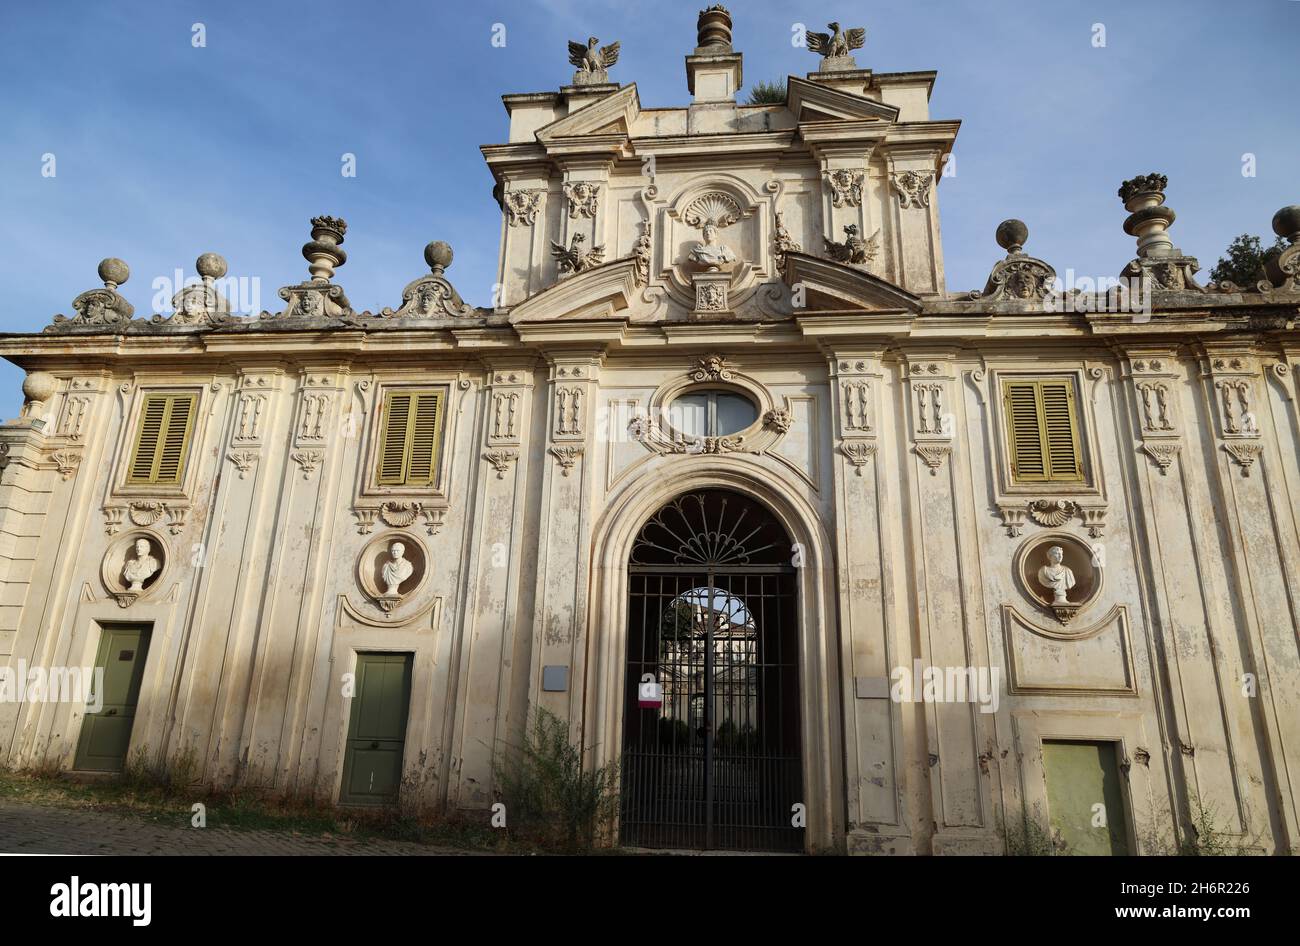 Facade of the Casino della Meridiana in Villa Borghese, Rome, Italy Stock Photo